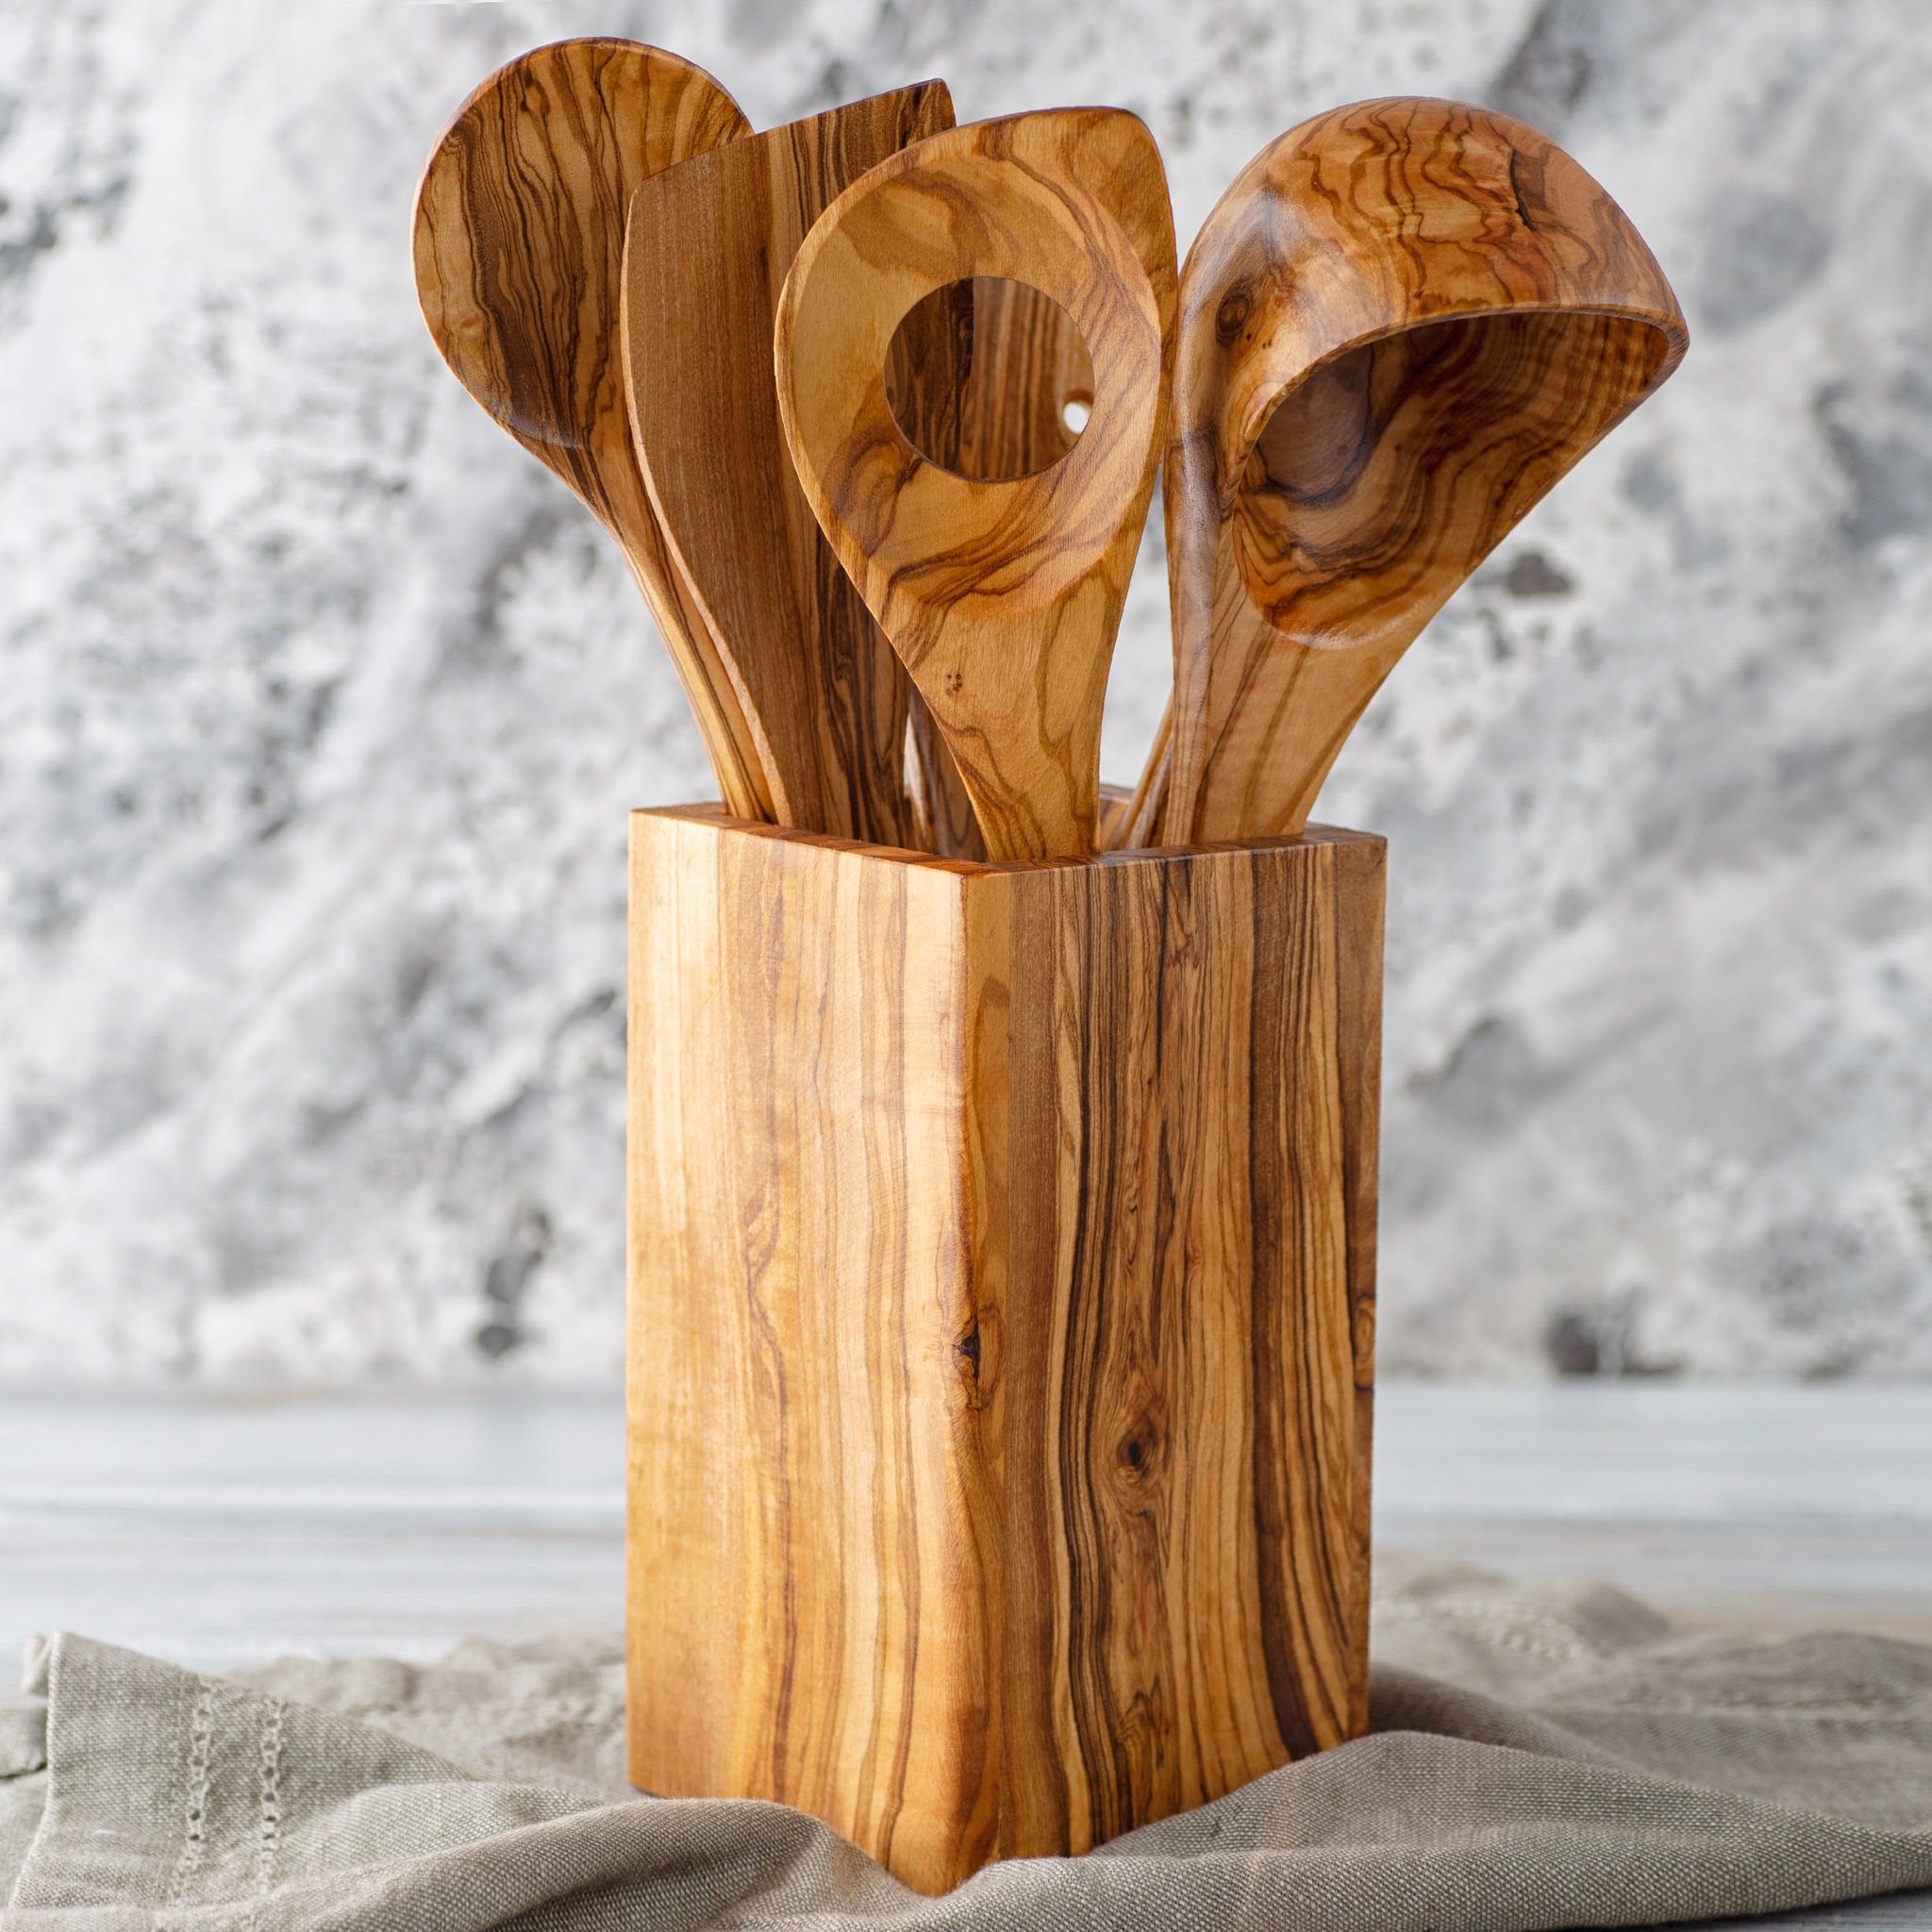 Wooden kitchen utensils on white background. Cutting board, fork